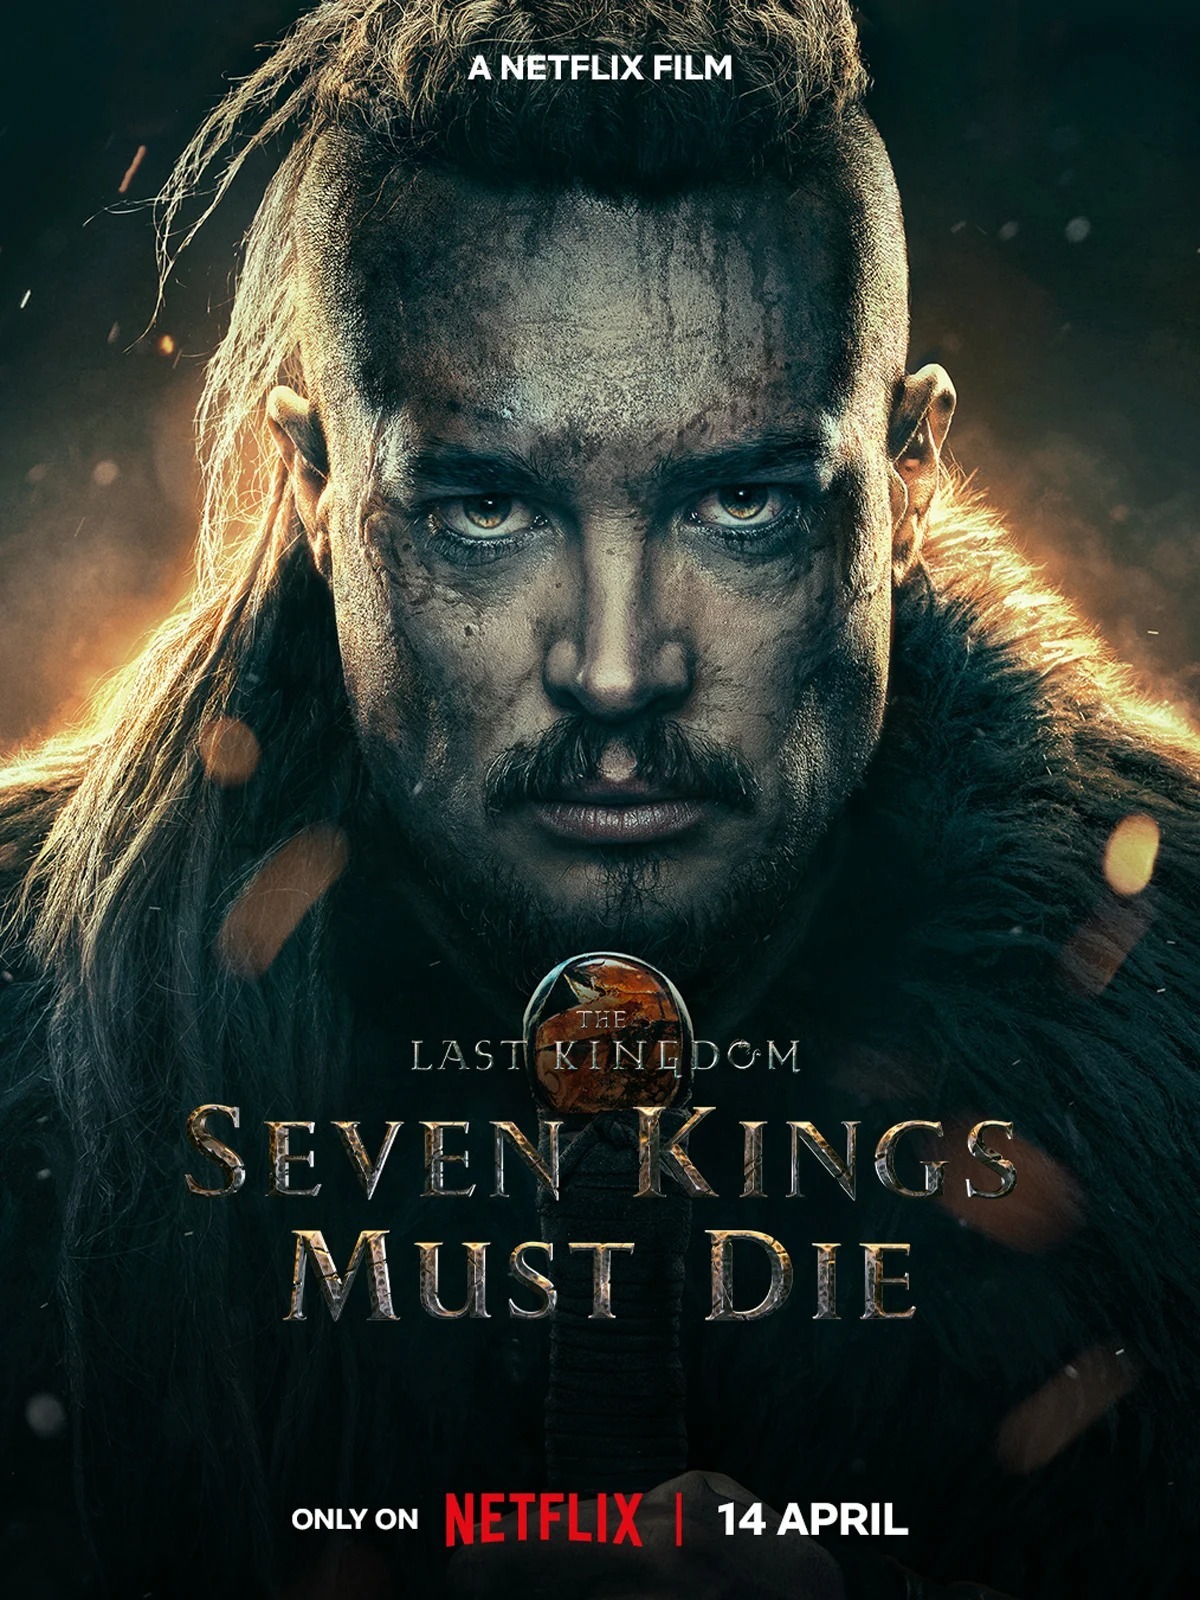 The Last KIngdom : Seven Kings Must Die